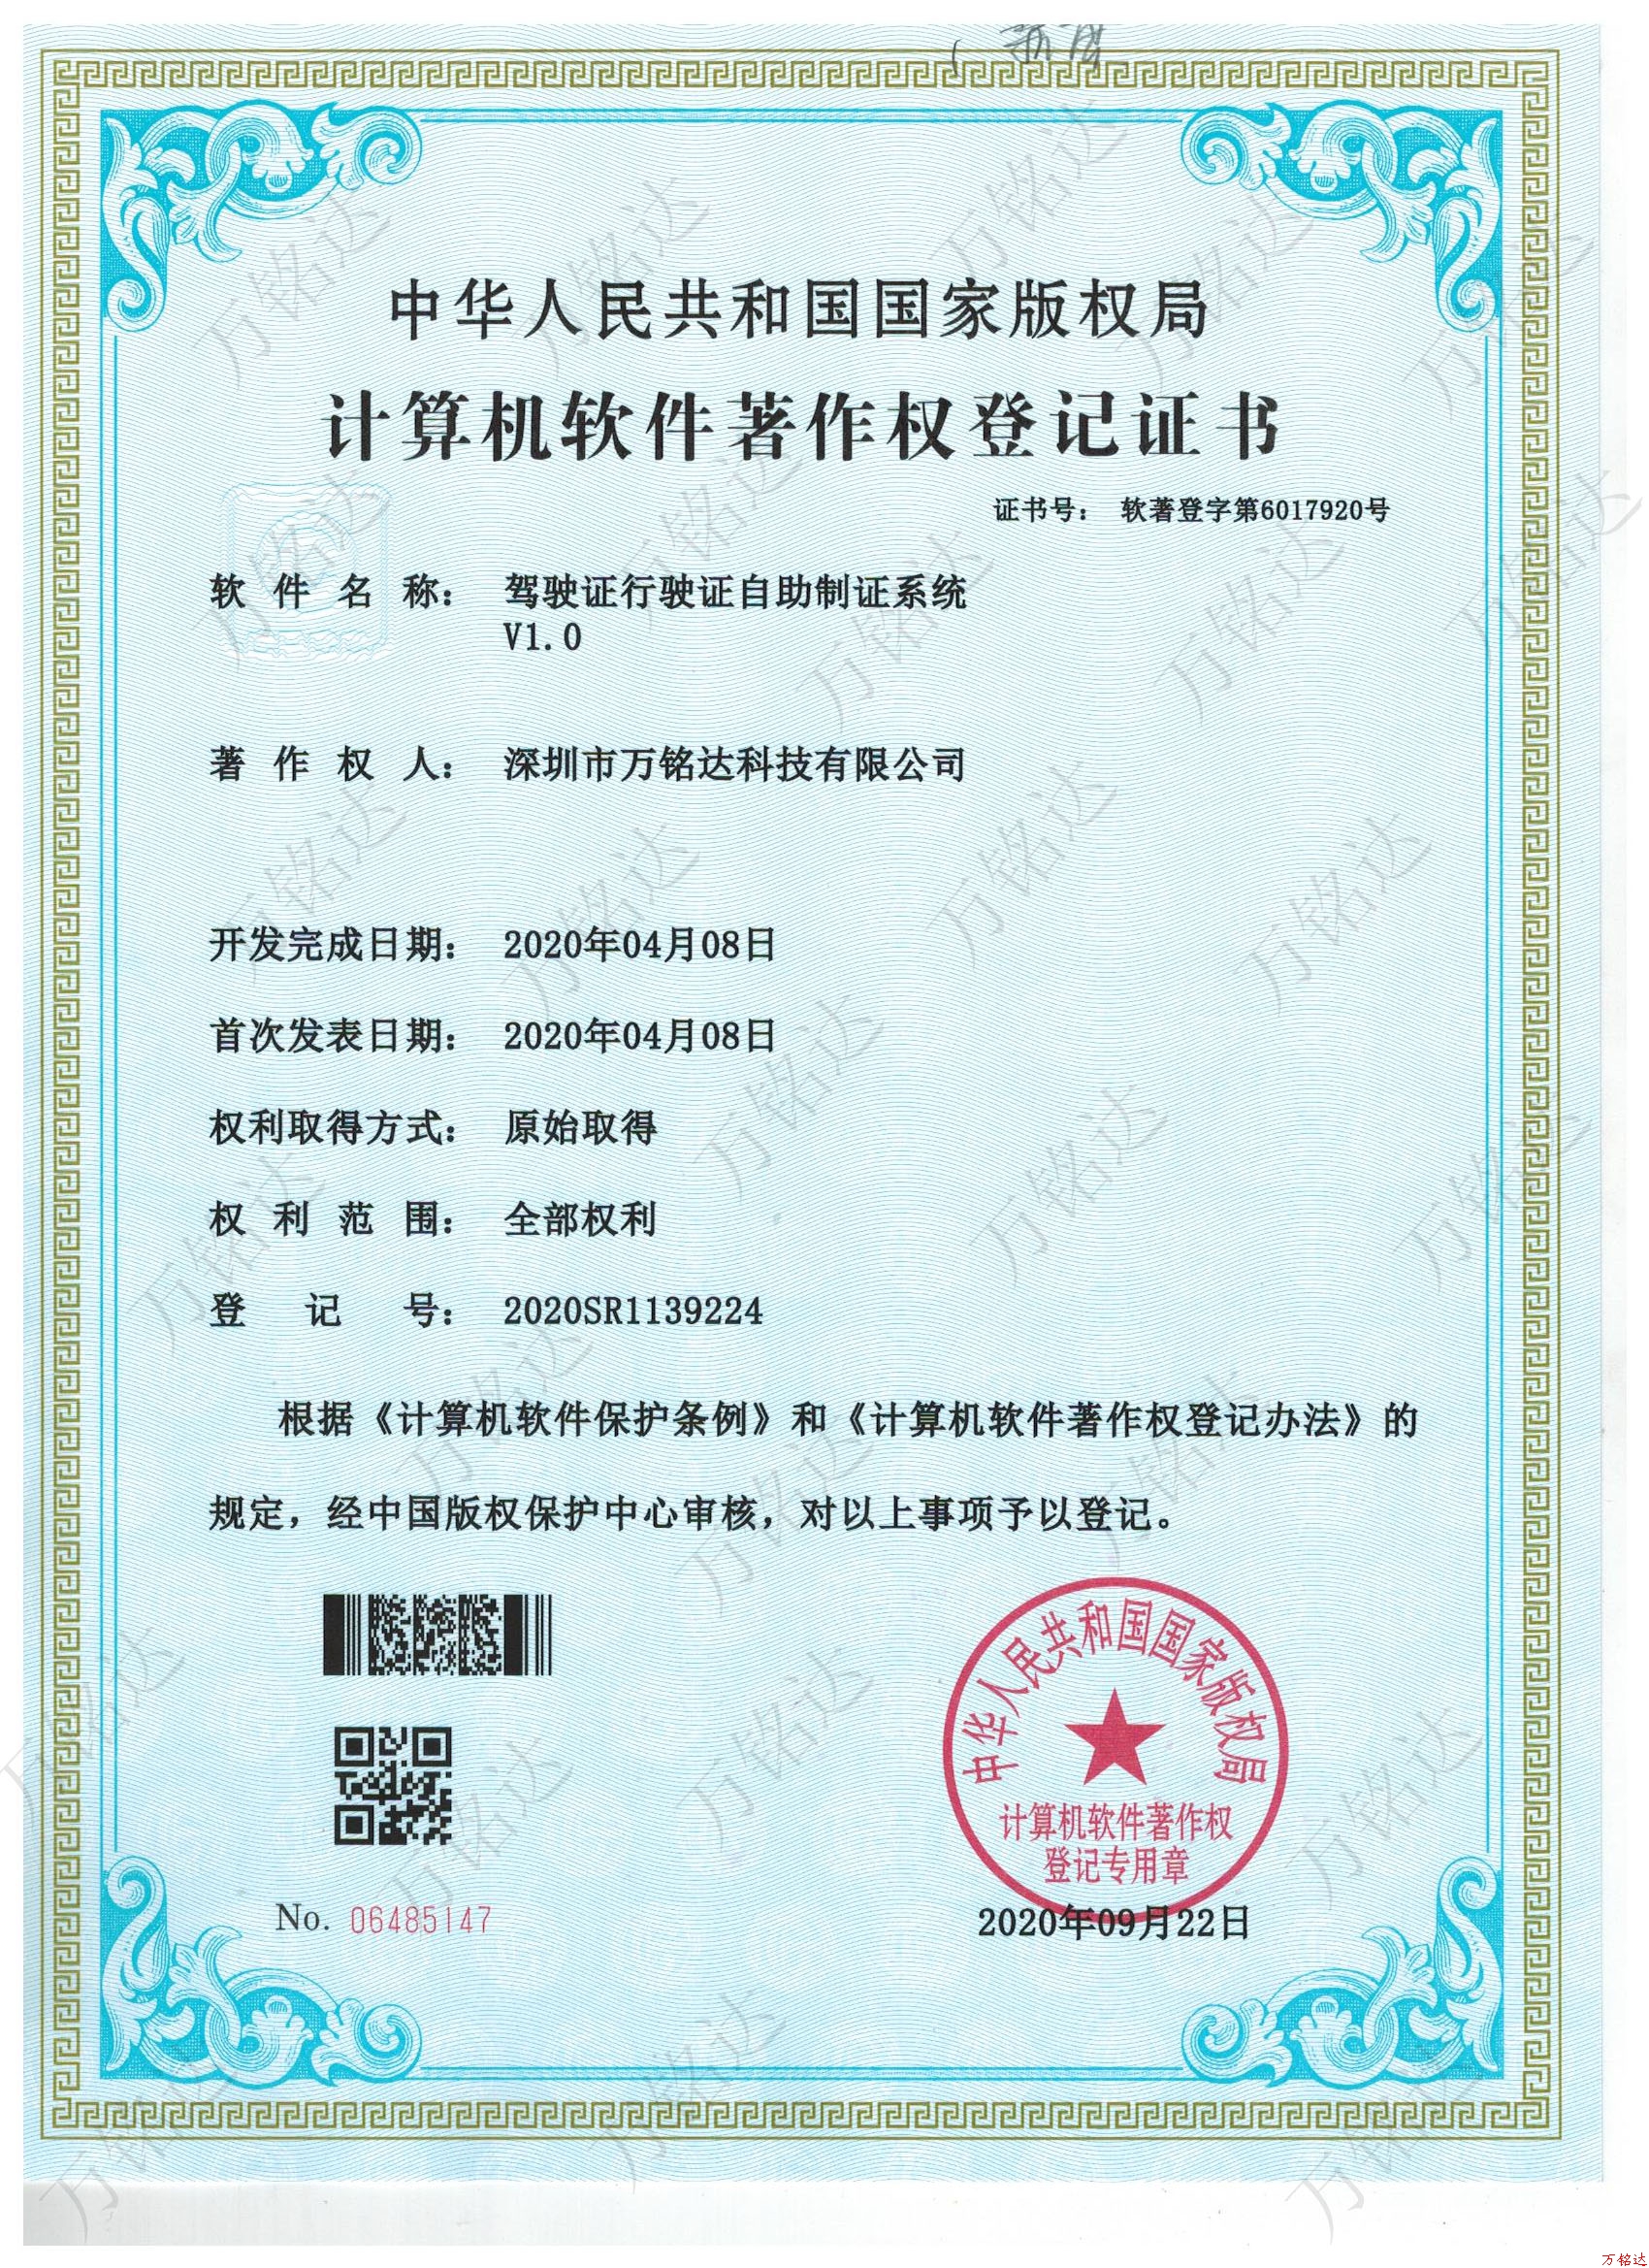 驾驶证行驶证自助制证系统V1.0